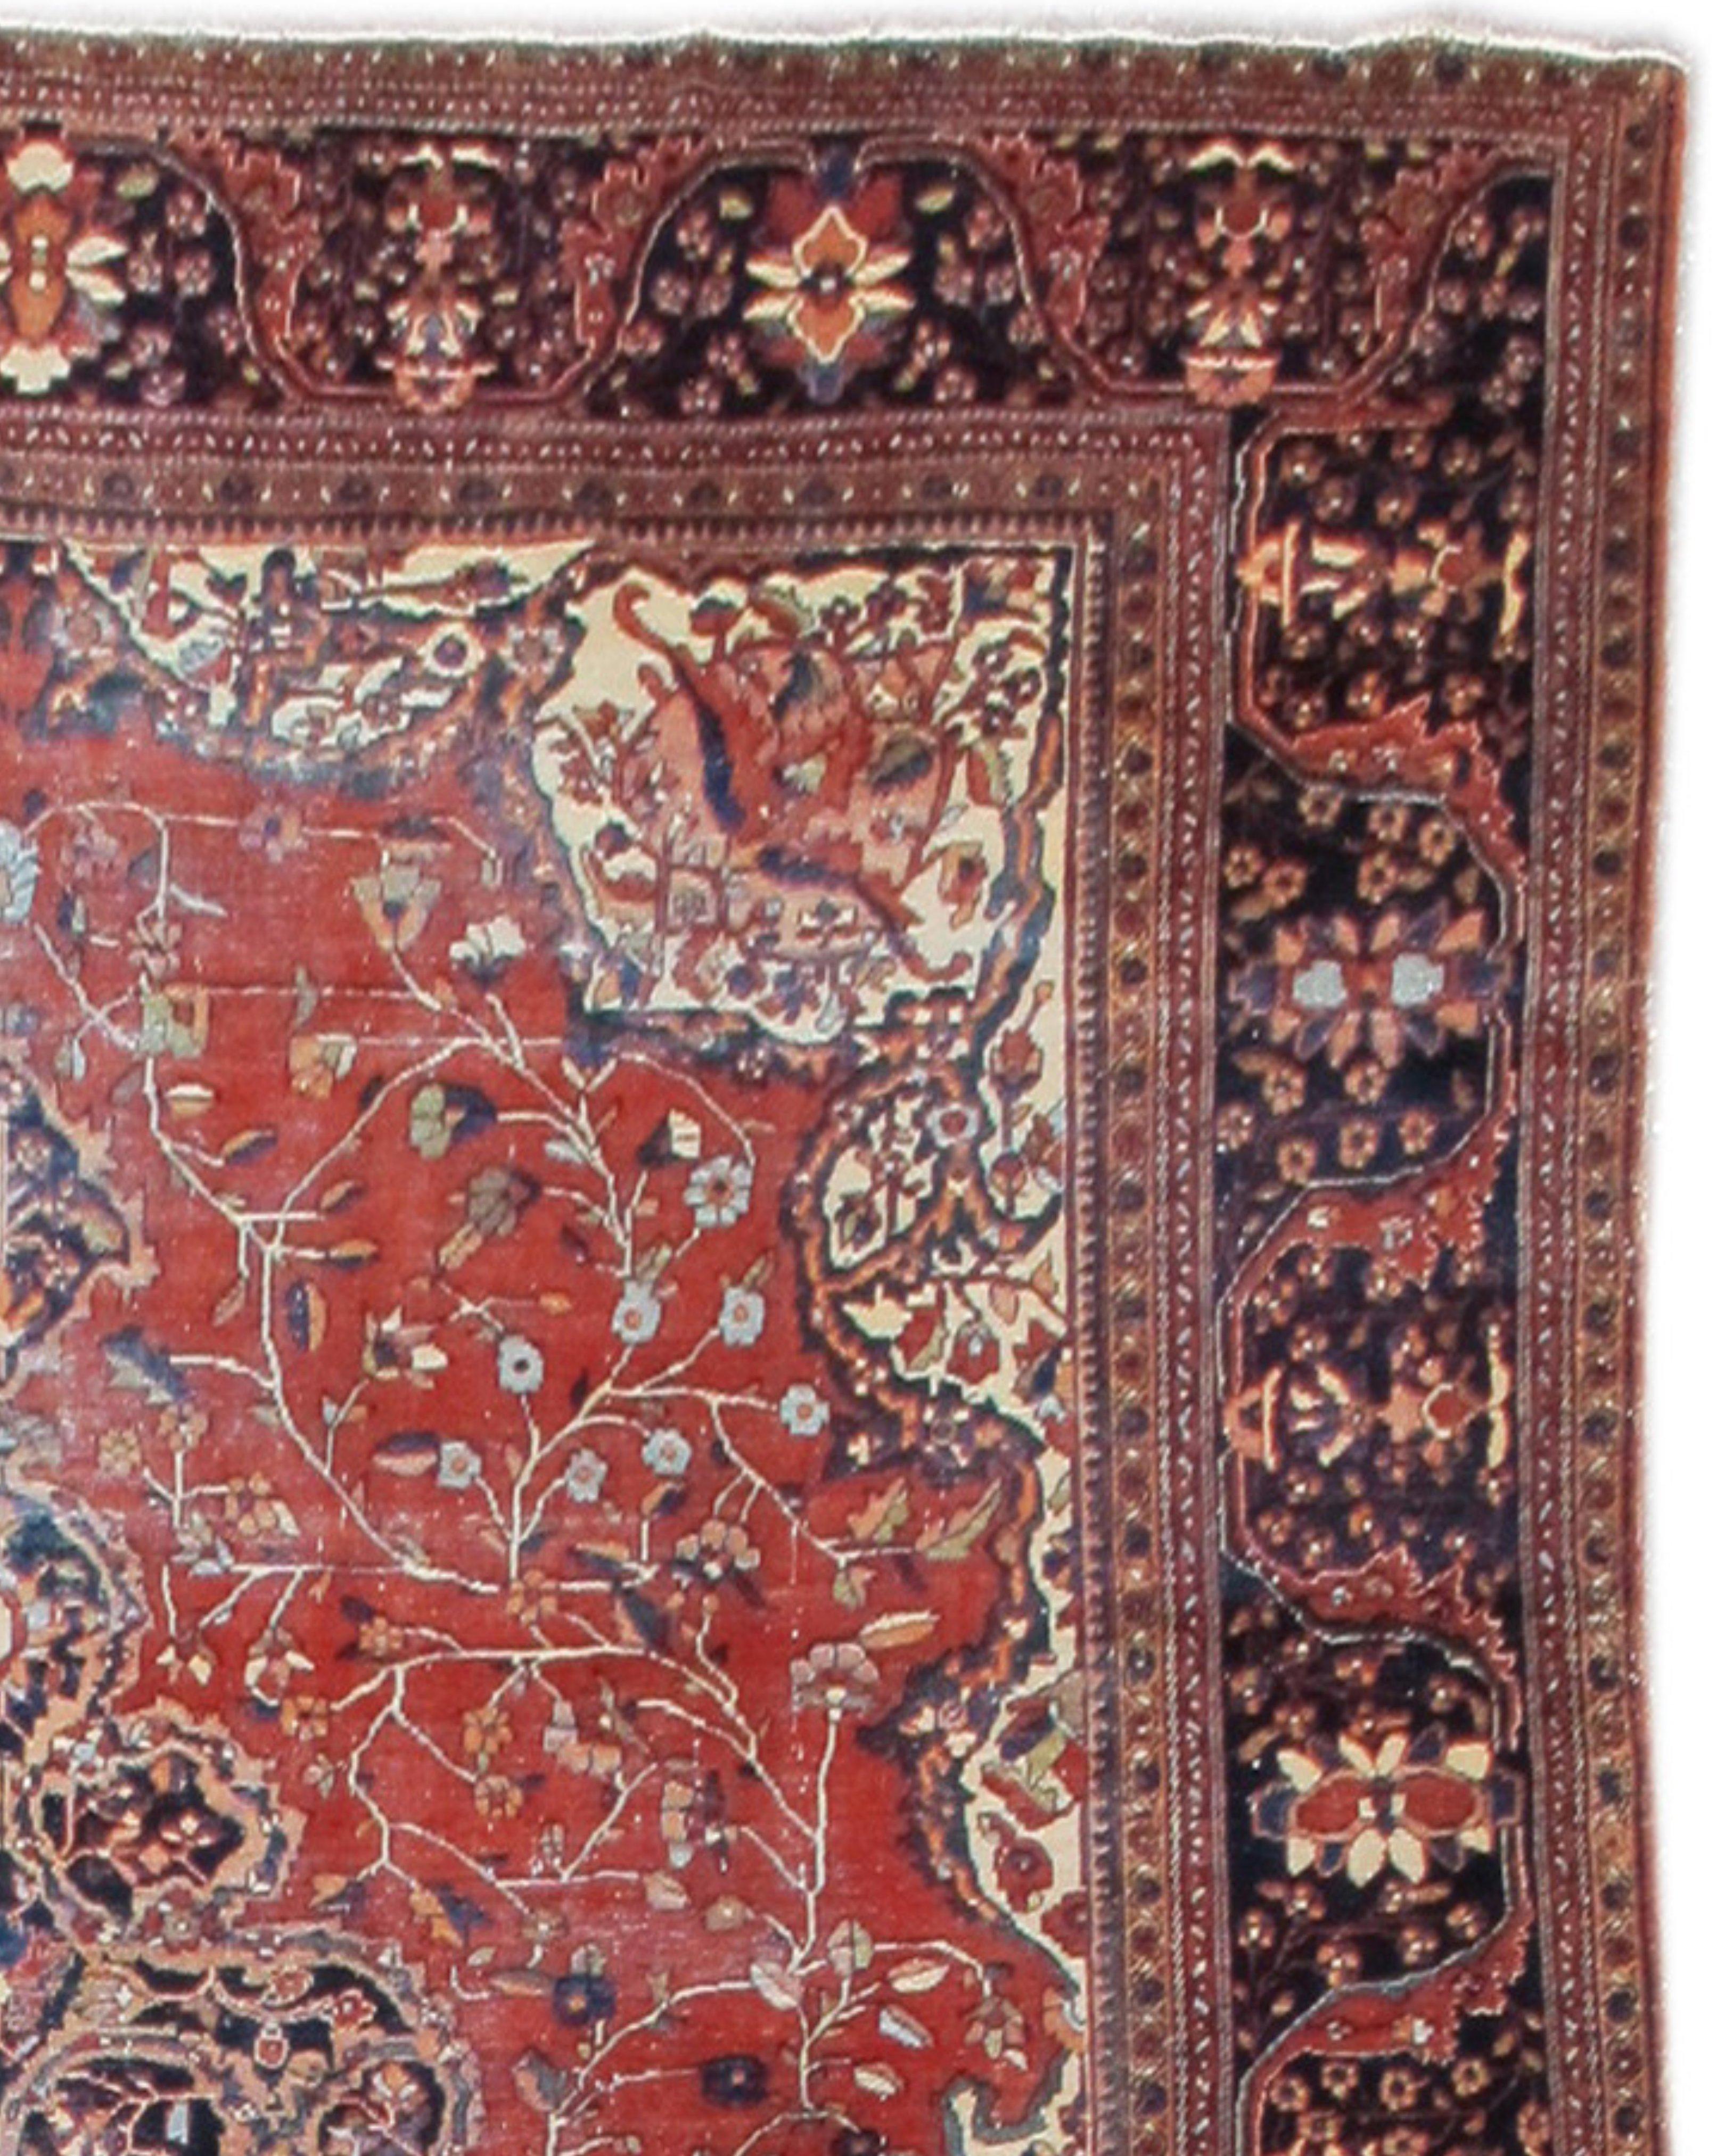 Fereghan Sarouk-Teppich, um 1900

Zusätzliche Informationen:
Abmessungen: 8'9